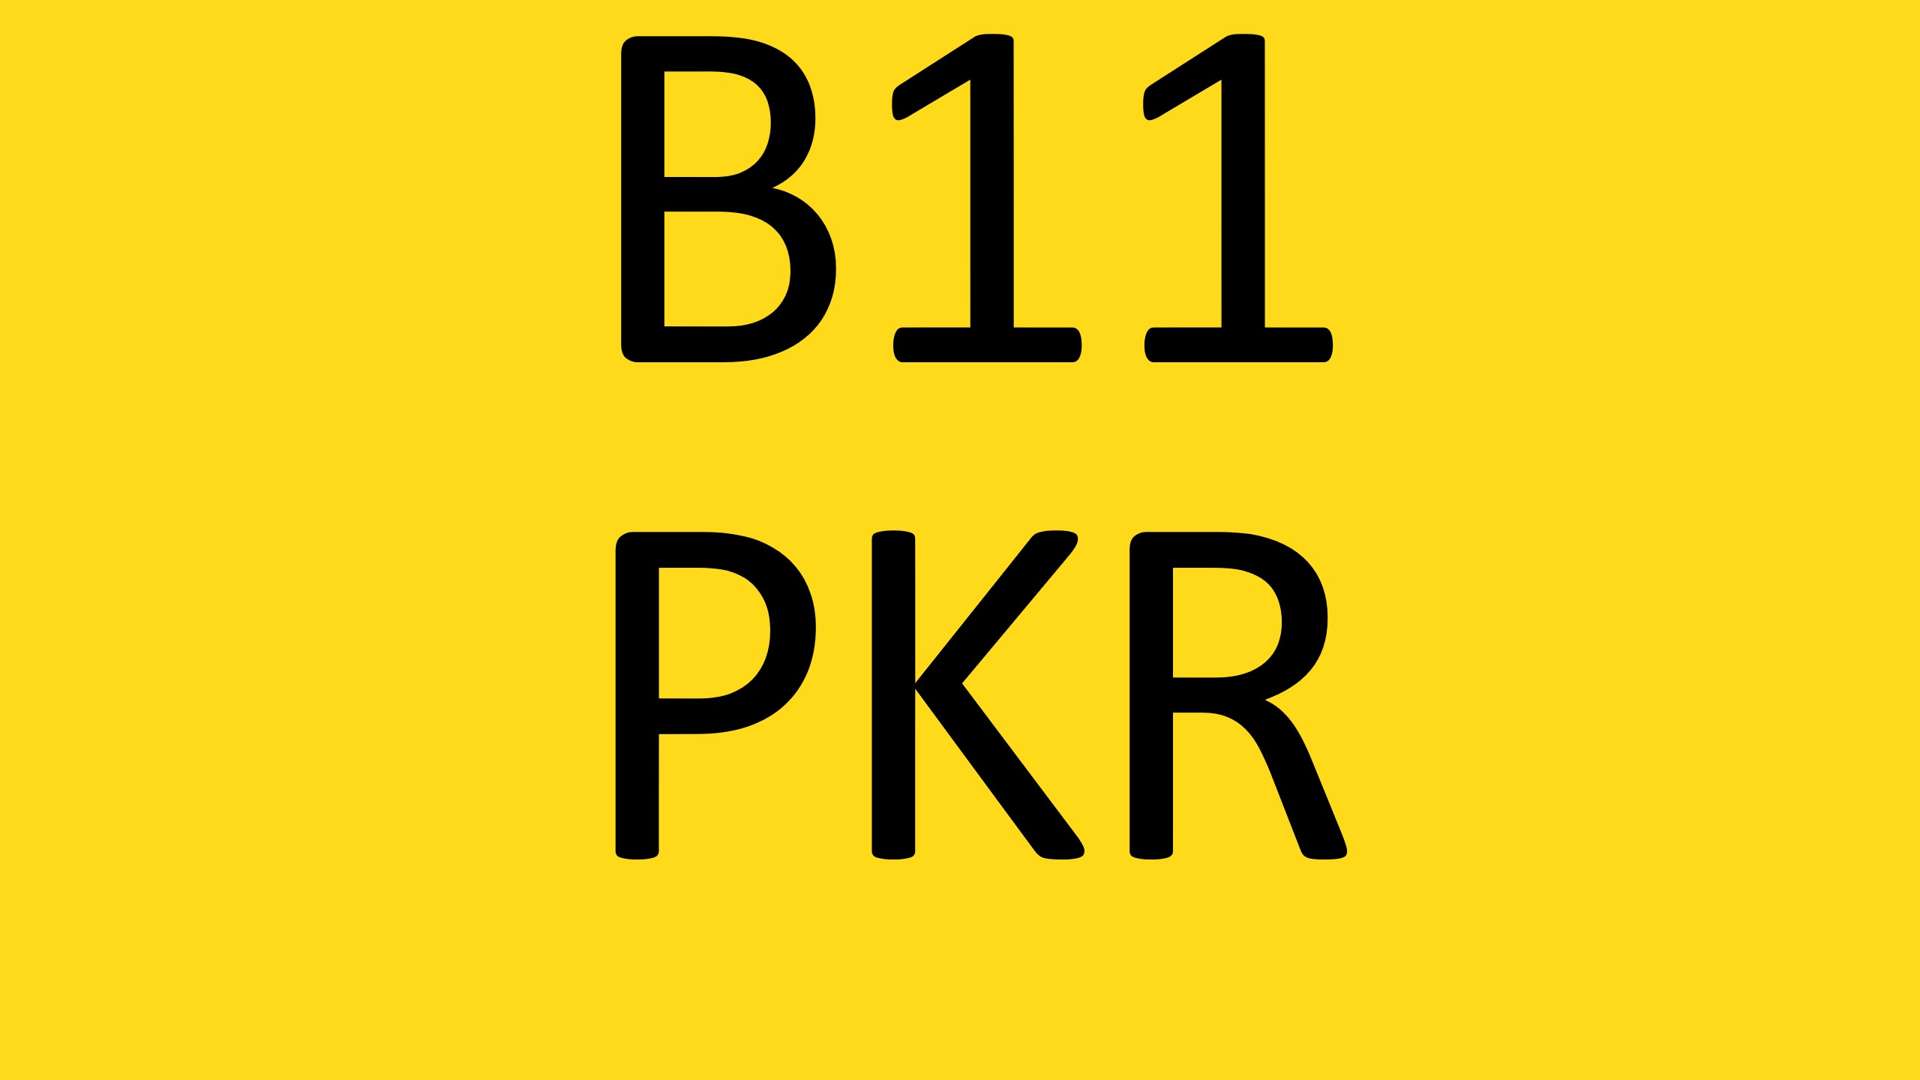 <p>B11 PKR Registration number</p>